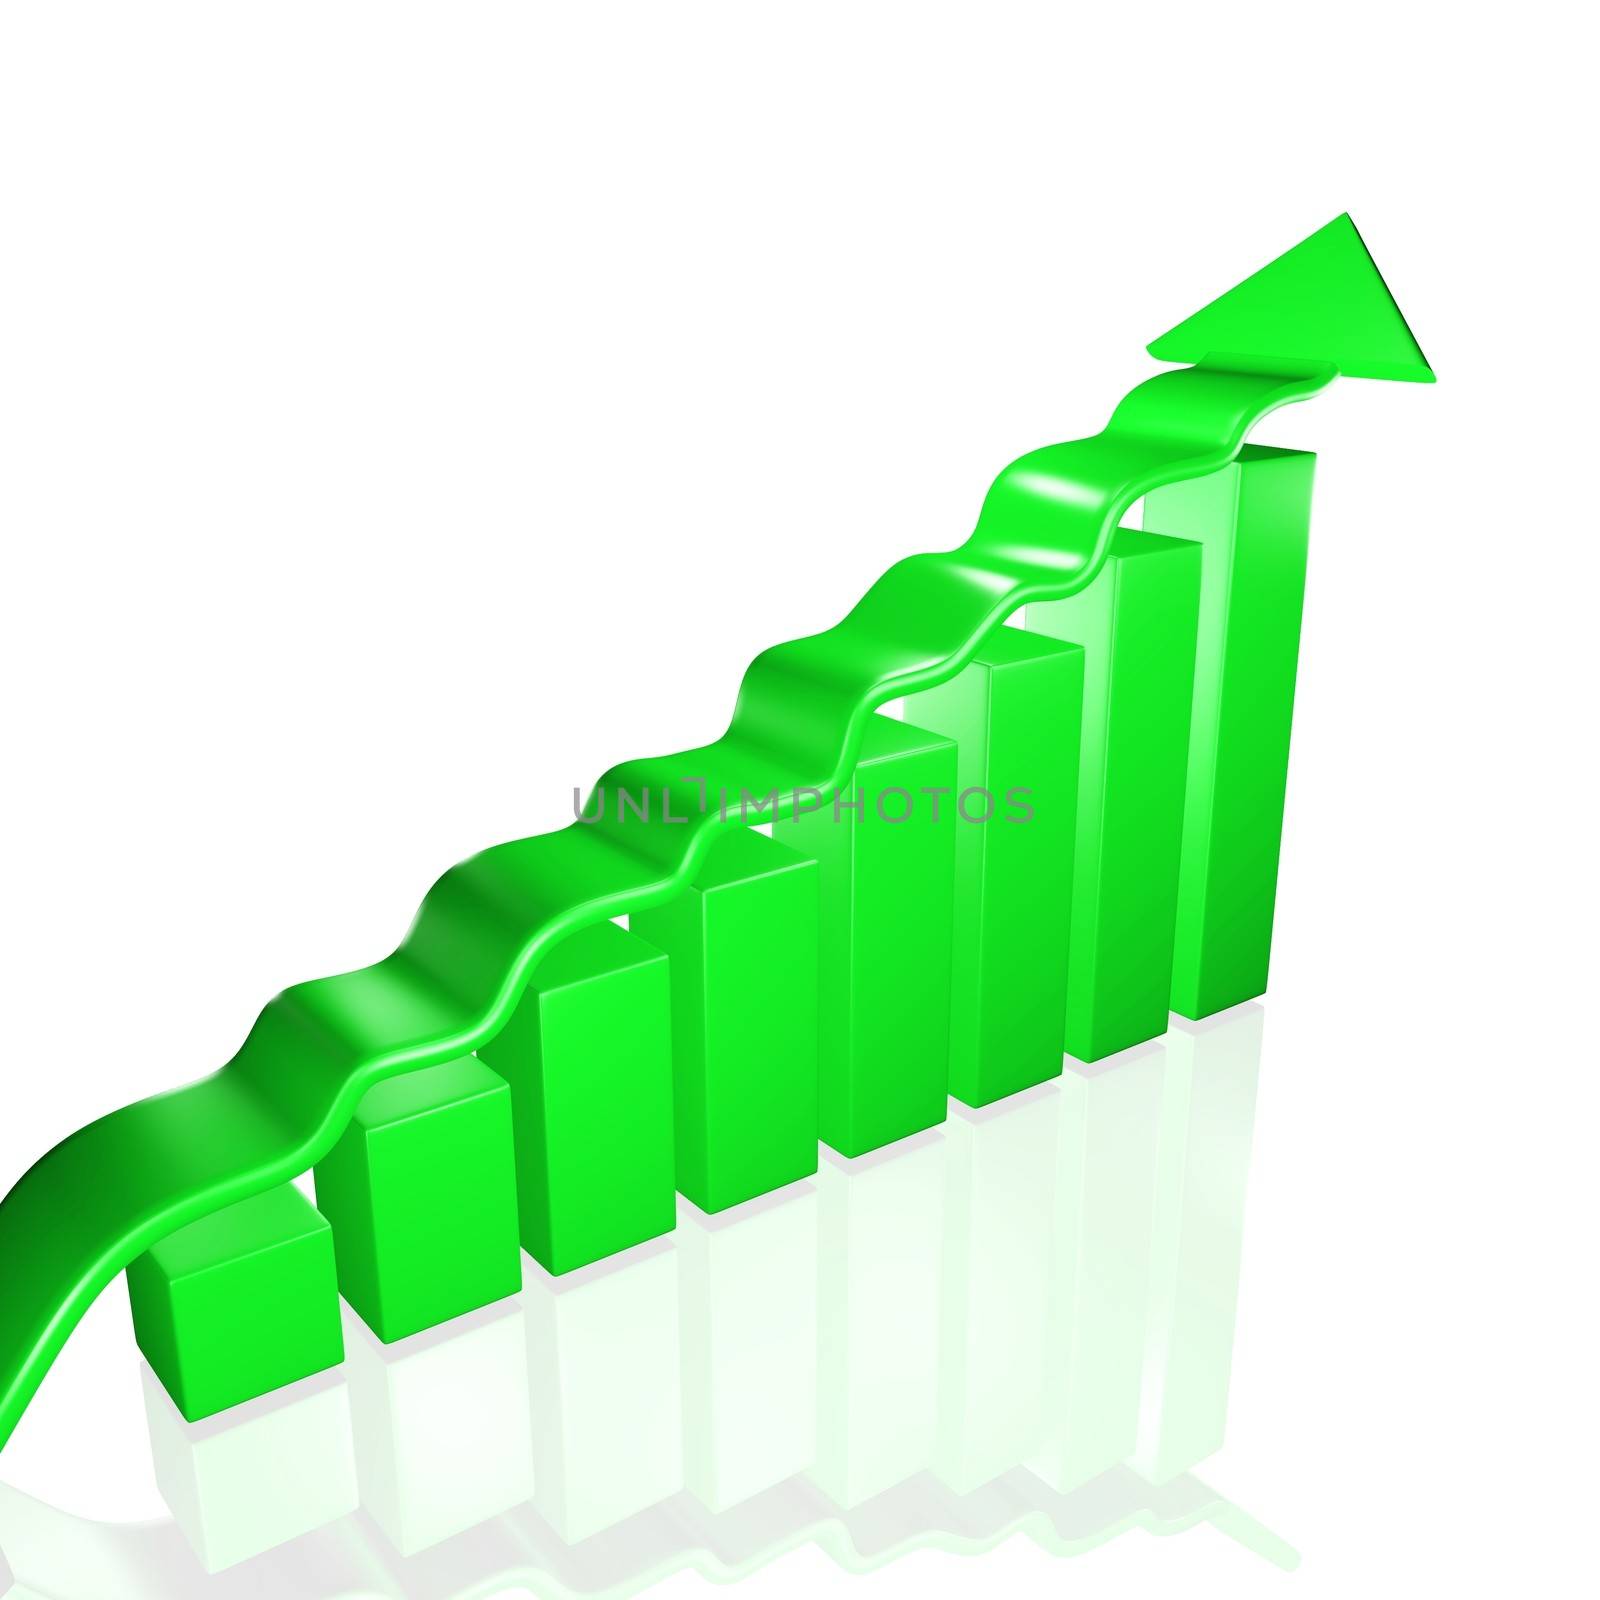 3D business growth bar chart with an upward rising arrow
